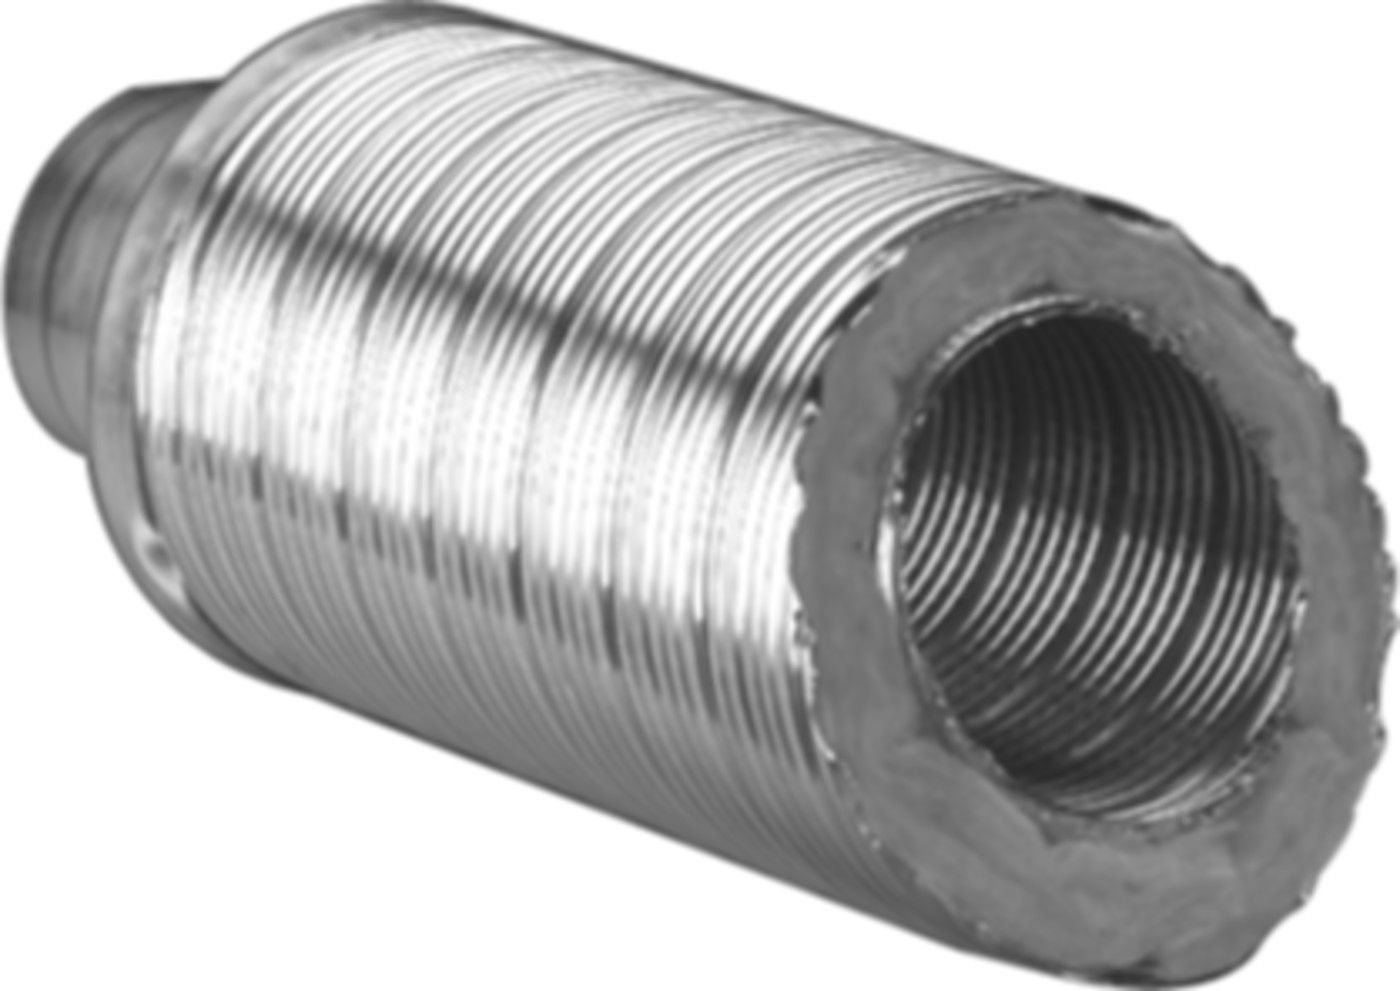 Telefonie-Schalldämpfer TSD 50 100/207 m/Glasfaserisolierung 50 mm, Länge 1 m - Flexible Lüftungsschläuche